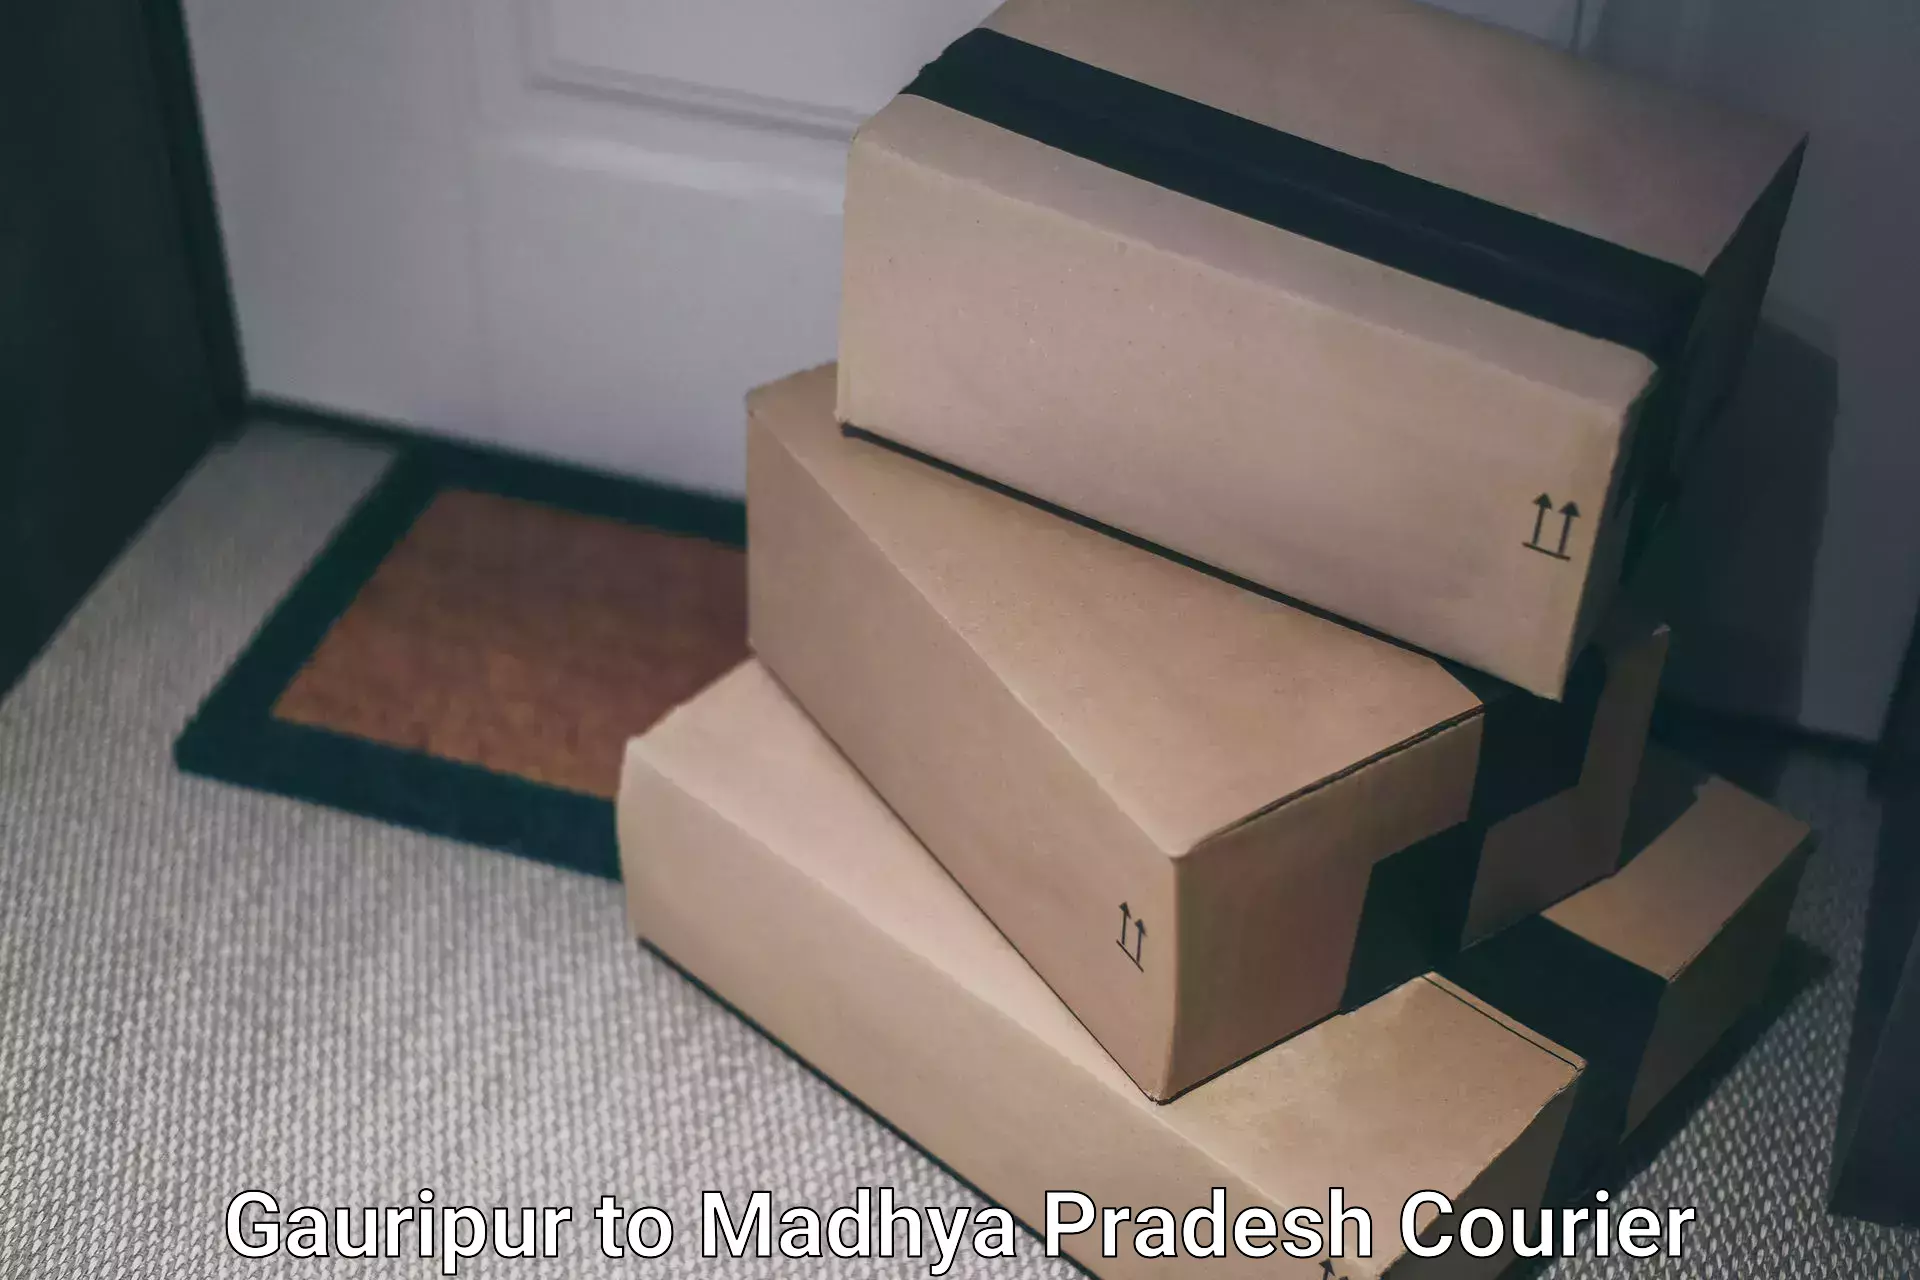 Door-to-door freight service Gauripur to Mandideep